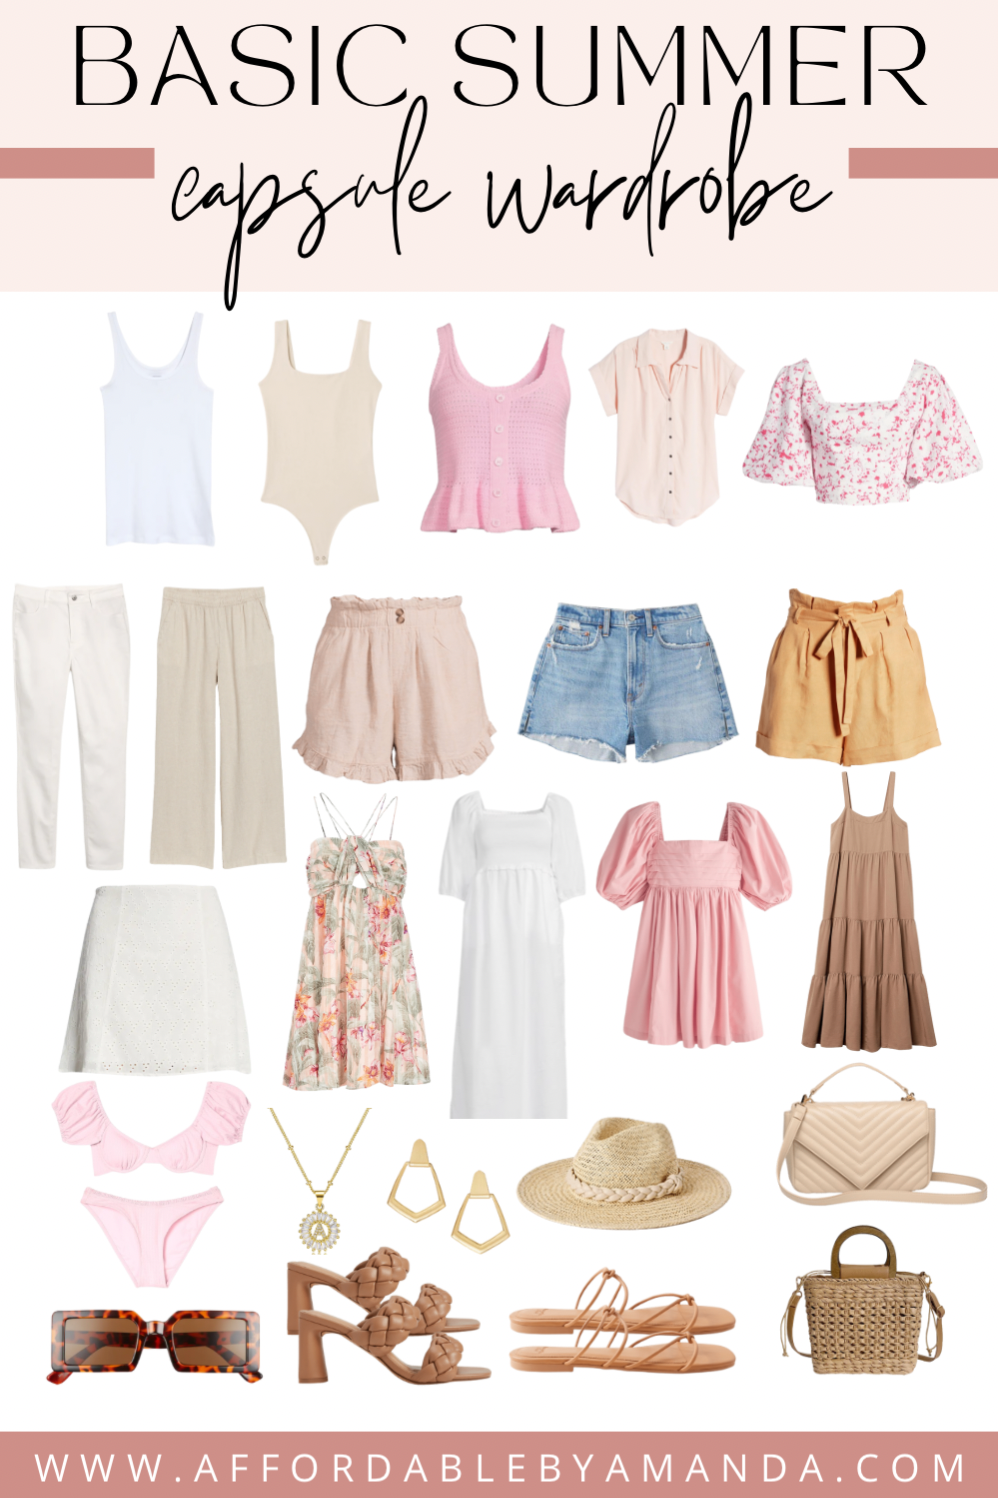 Basic Summer Capsule Wardrobe - Affordable by Amanda